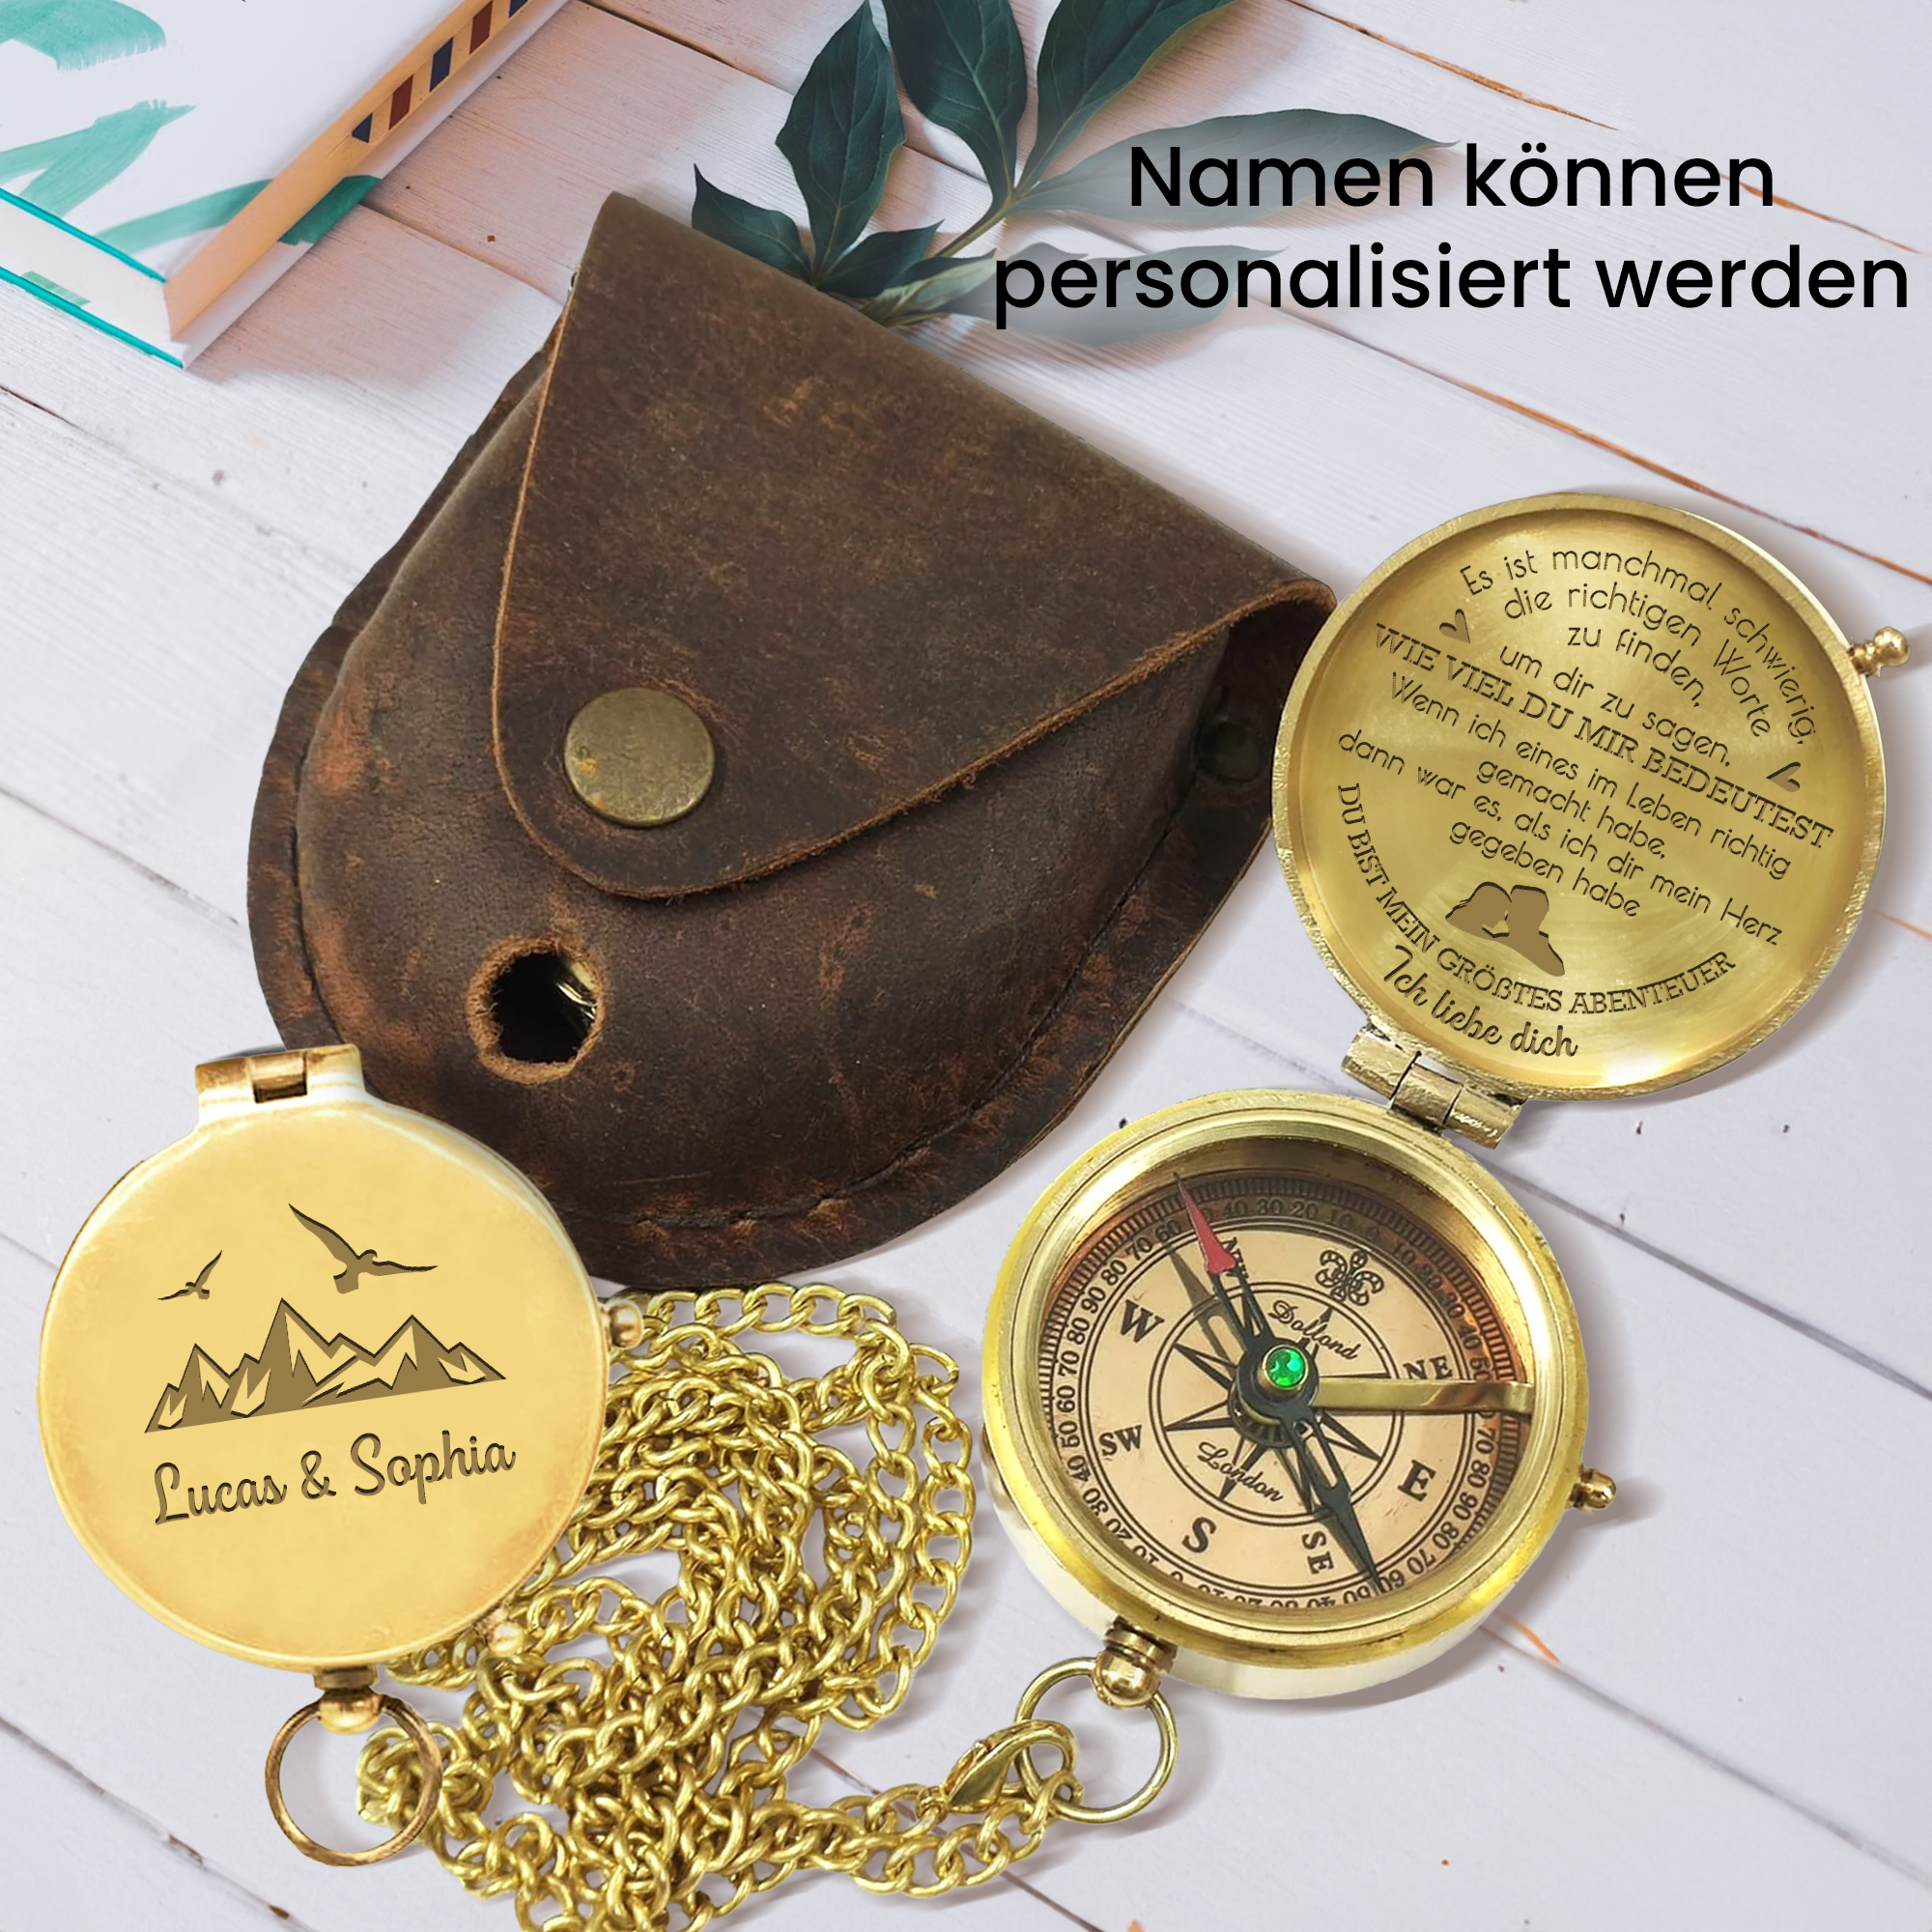 Personalisiert Gravierter Kompass - Familie - An Meinen Mann - Ich Dir Mein Herz Gegeben Habe - Degpb26045